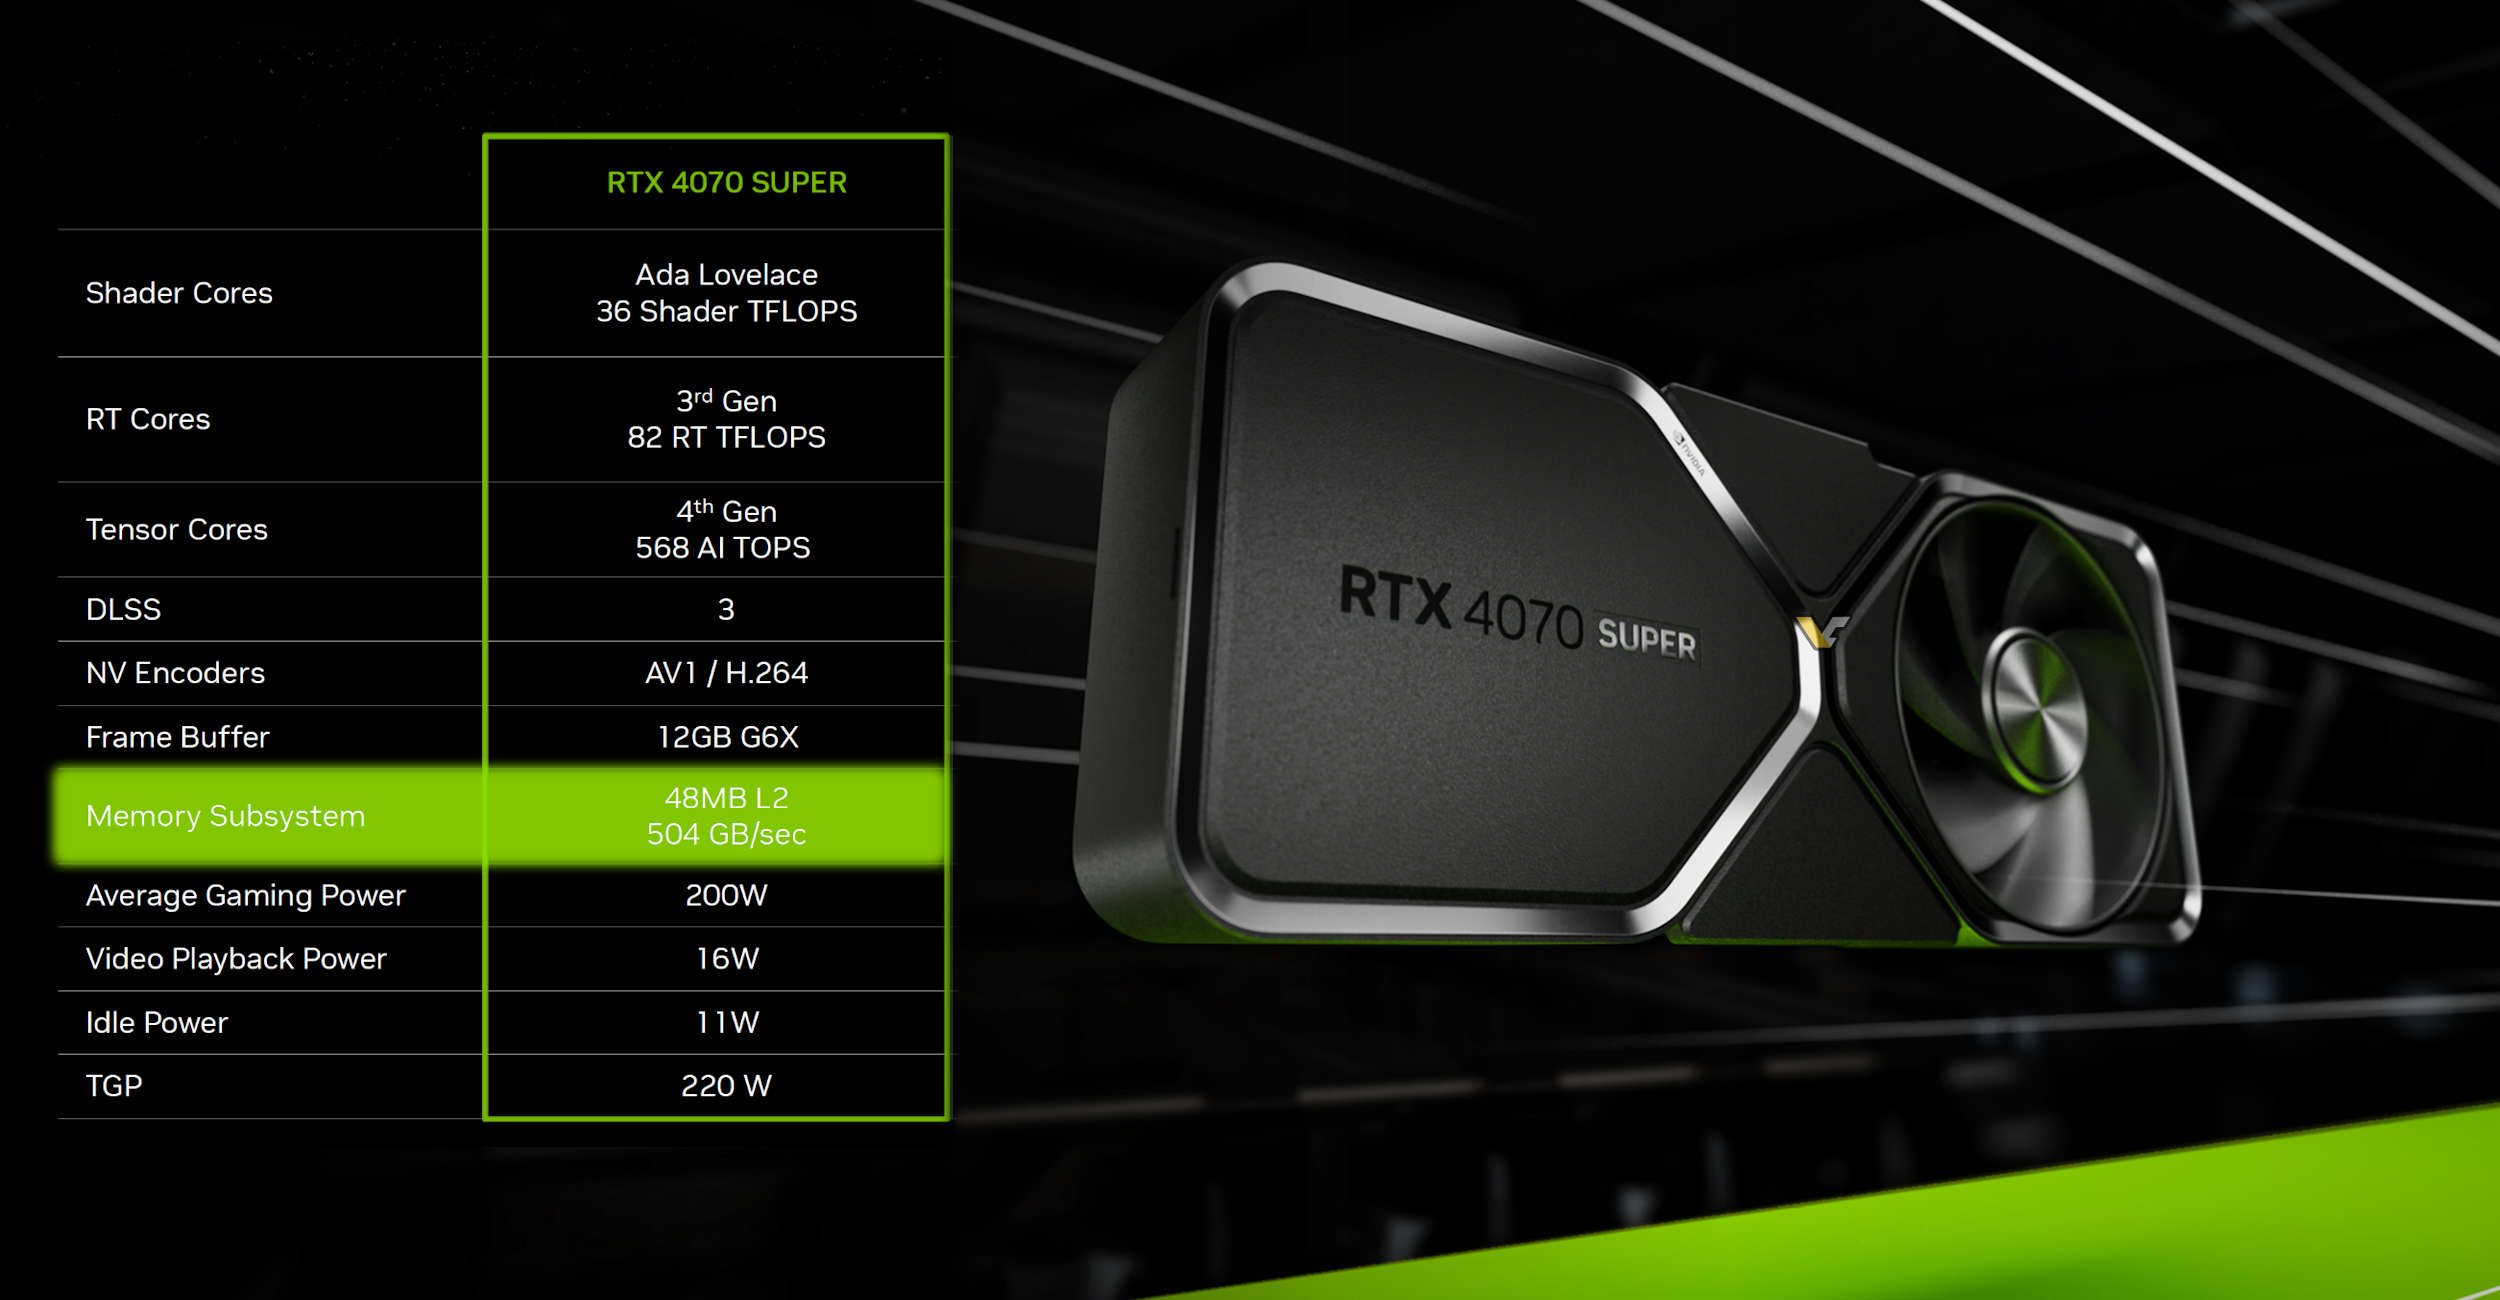 Die NVIDIA RTX 4070 SUPER AD104 GPU verfügt über 48 MB L2-Cache, nicht wie zuvor behauptet über 36 MB